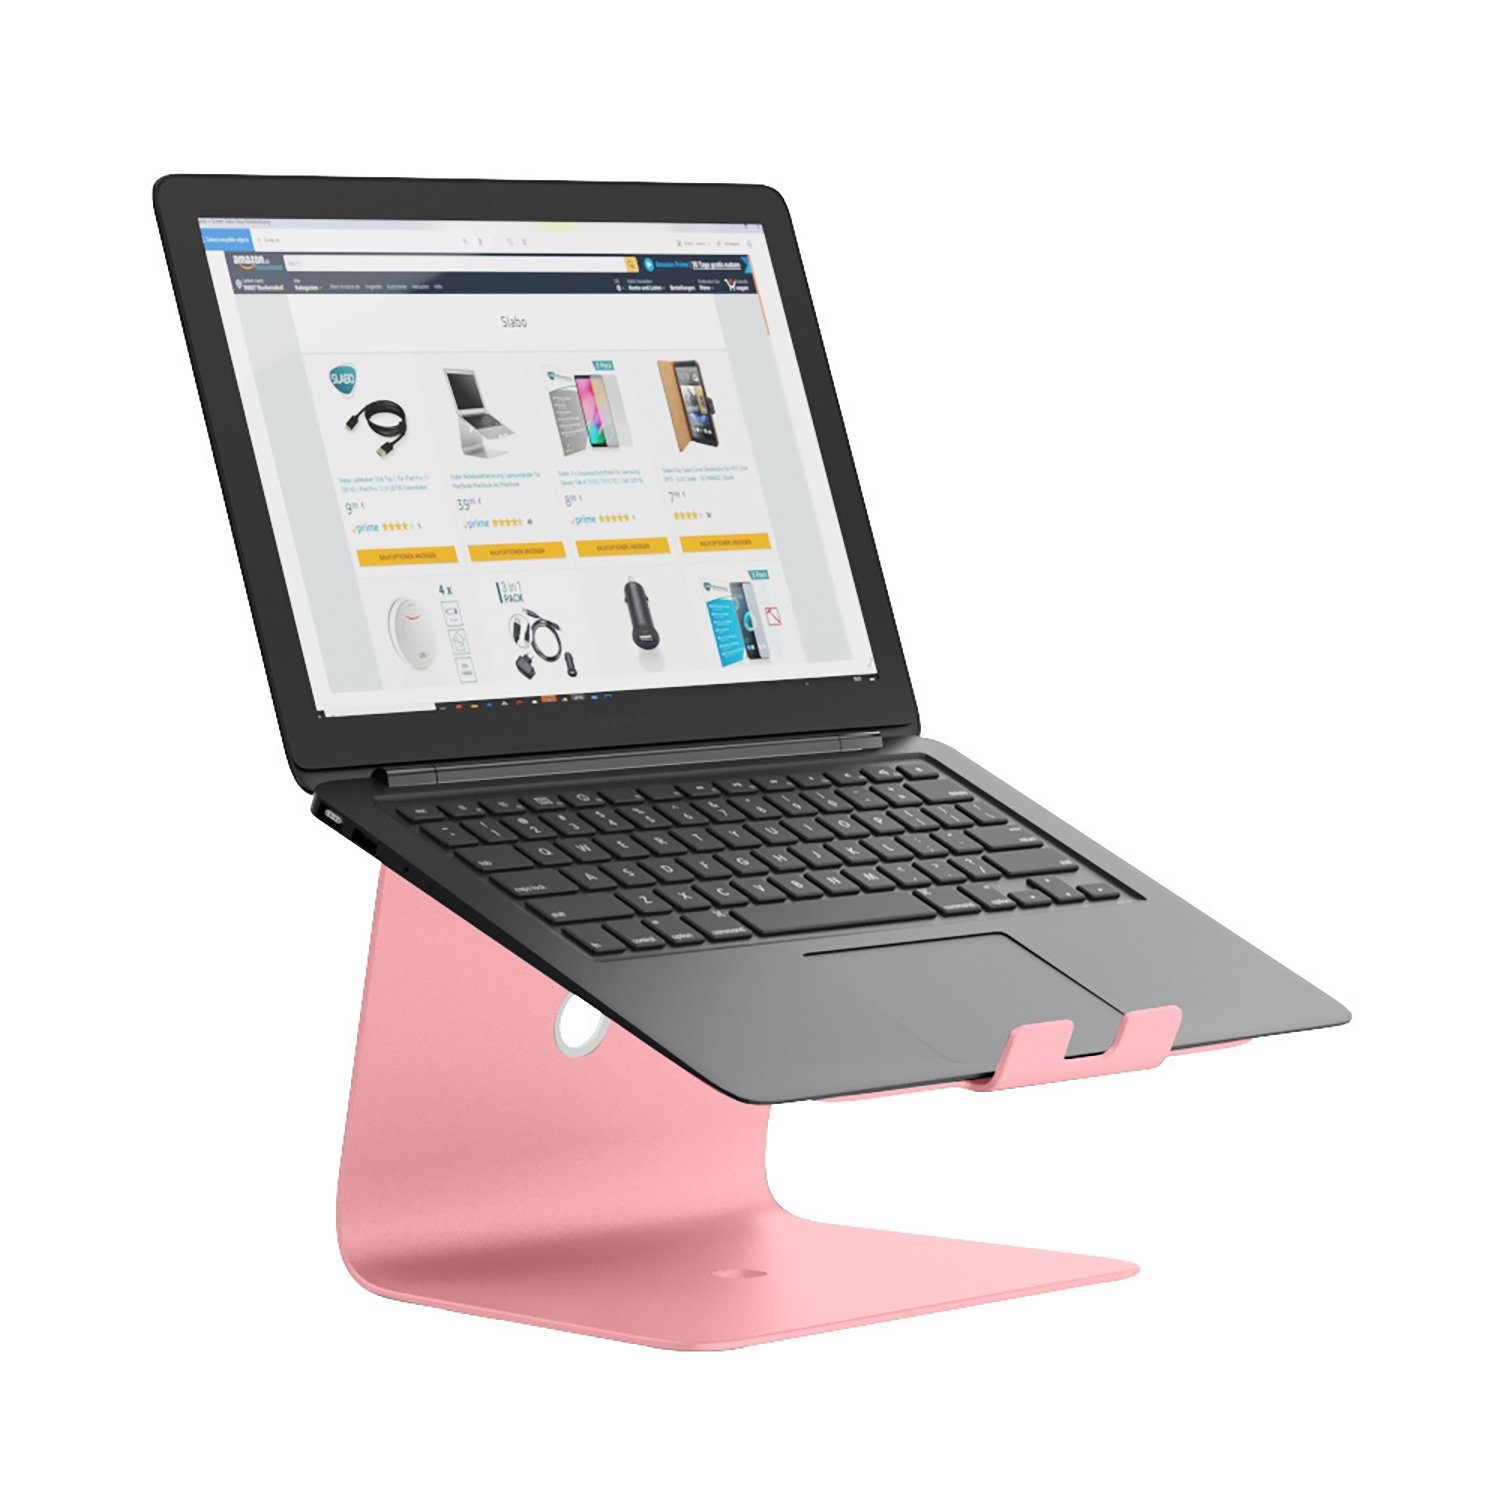 SLABO Notebookhalterung Laptopständer für MacBook / MacBook Air / MacBook  Pro / alle Notebooks / Laptops "Aluminium" - ROSÉGOLD / ROSA Laptop-Ständer